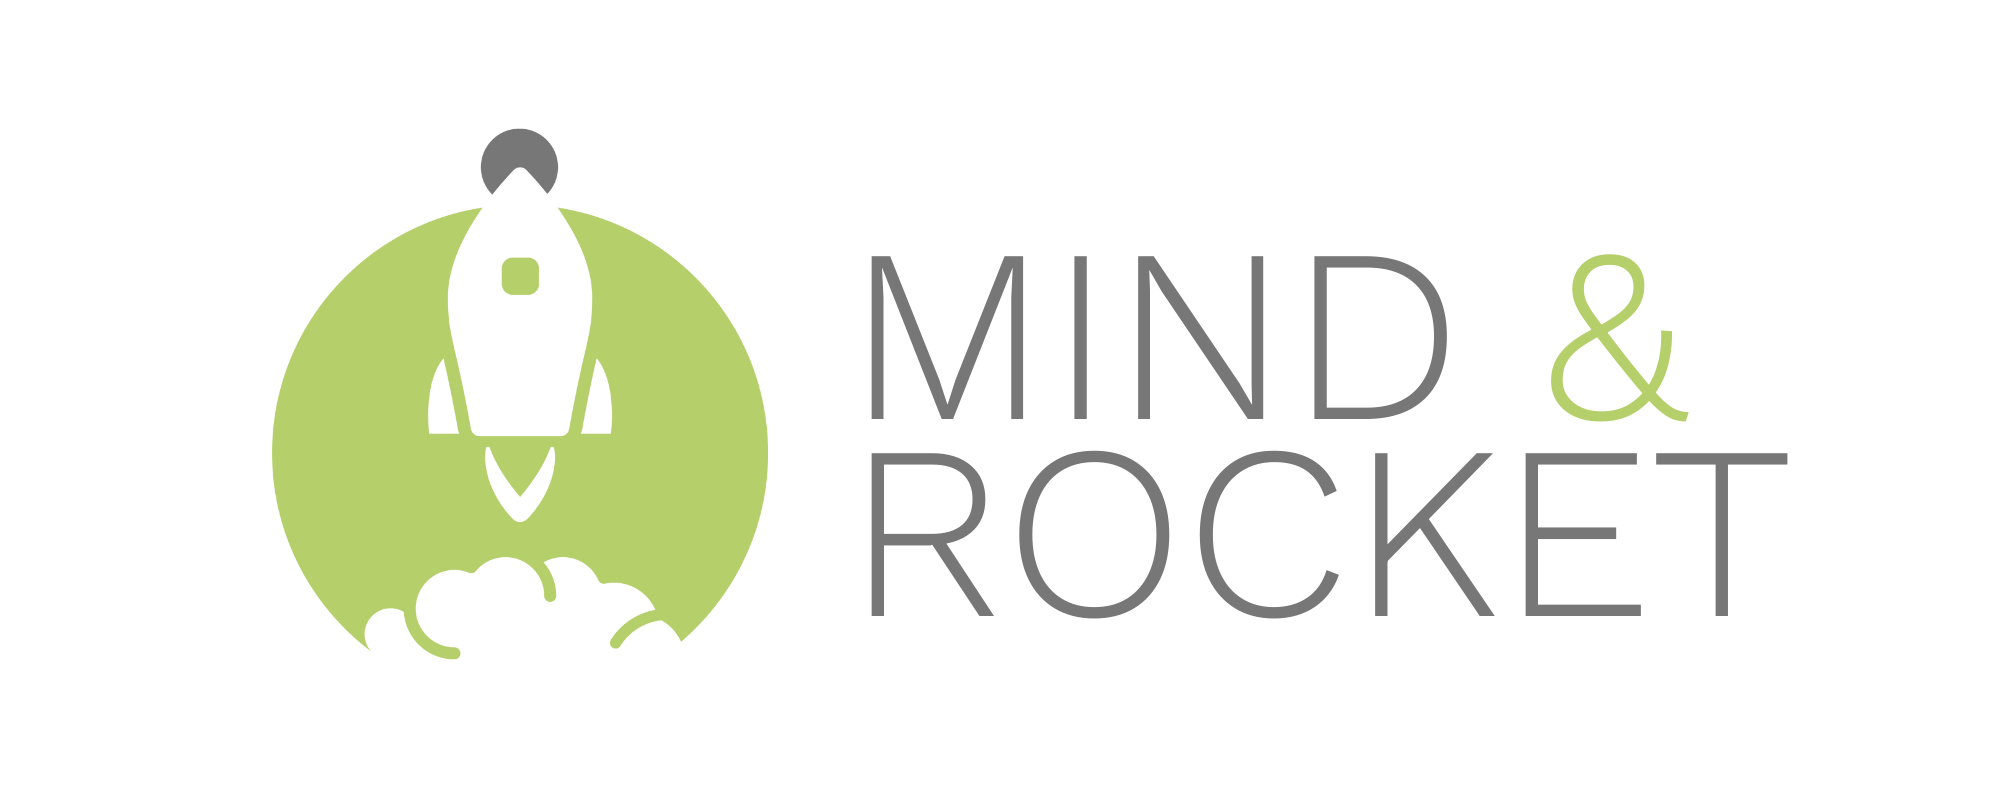 SEO und Social Media mit Mind & Rocket Logo